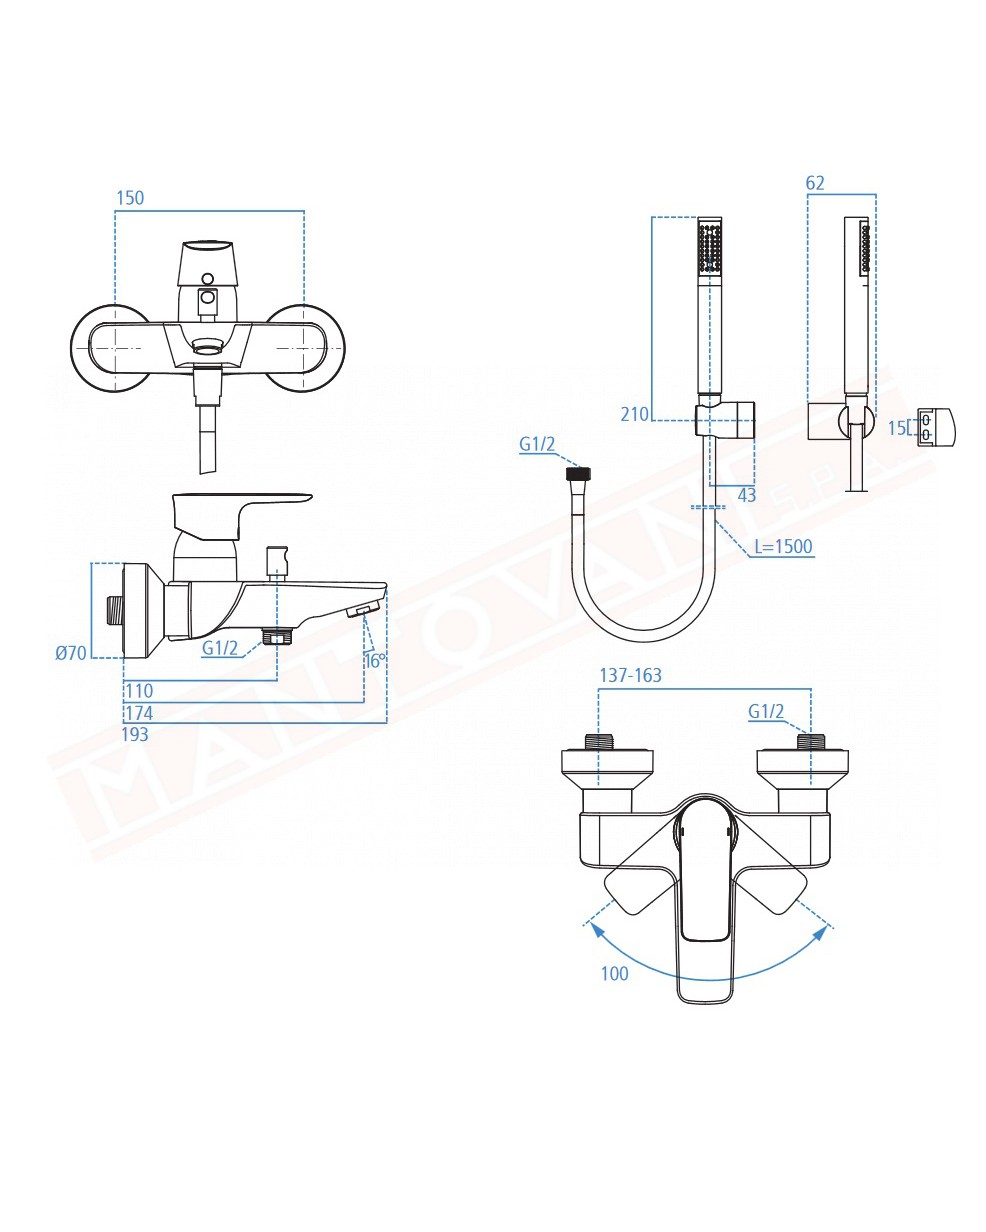 Connect Air rubinetto esterno vasca doccia con accessori Ideal Standard